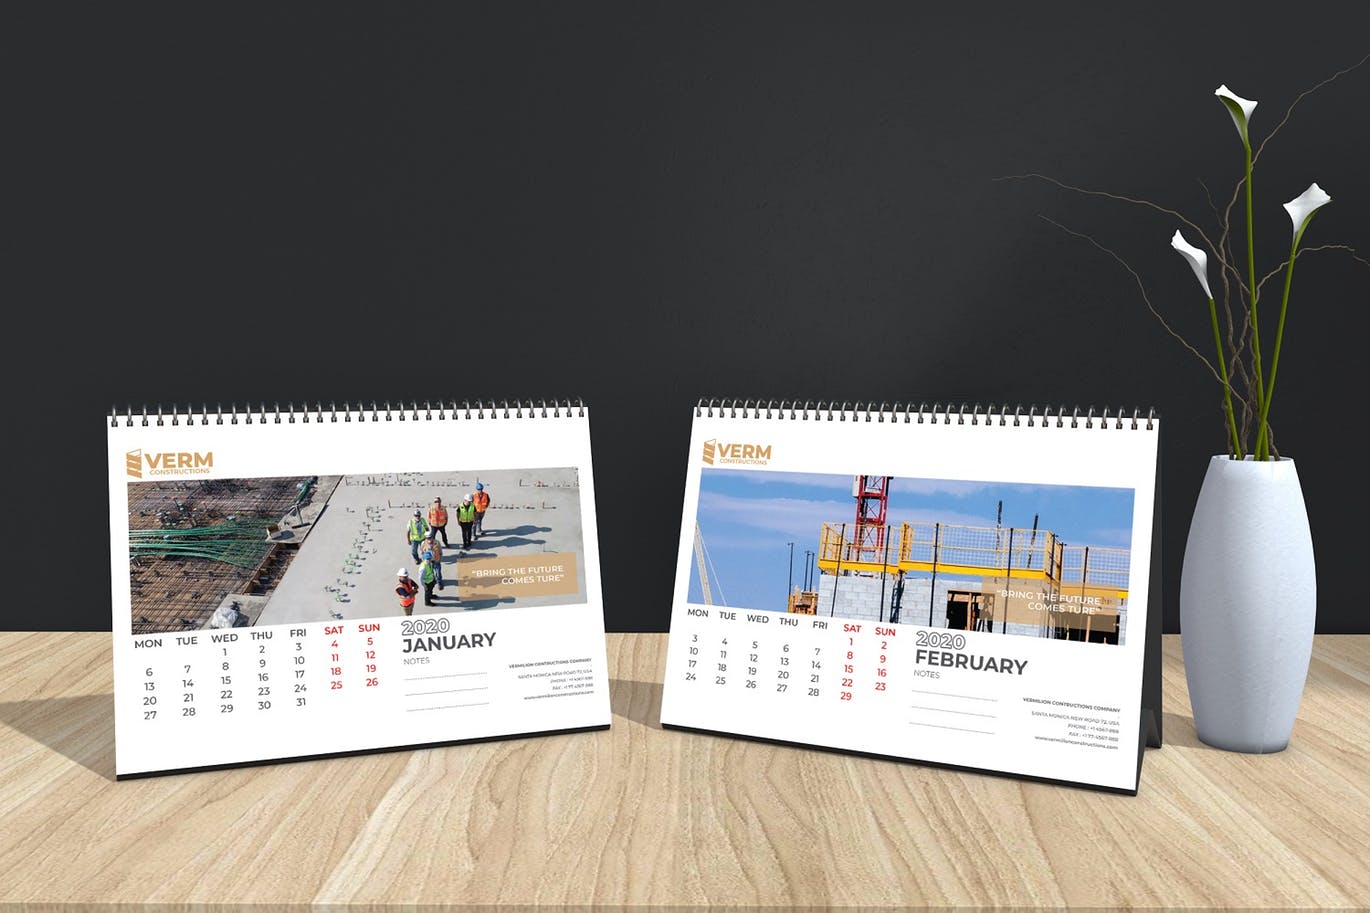 2020年建筑主题台历&挂墙日历表设计模板 Construction Wall & Table Calendar 2020插图(9)